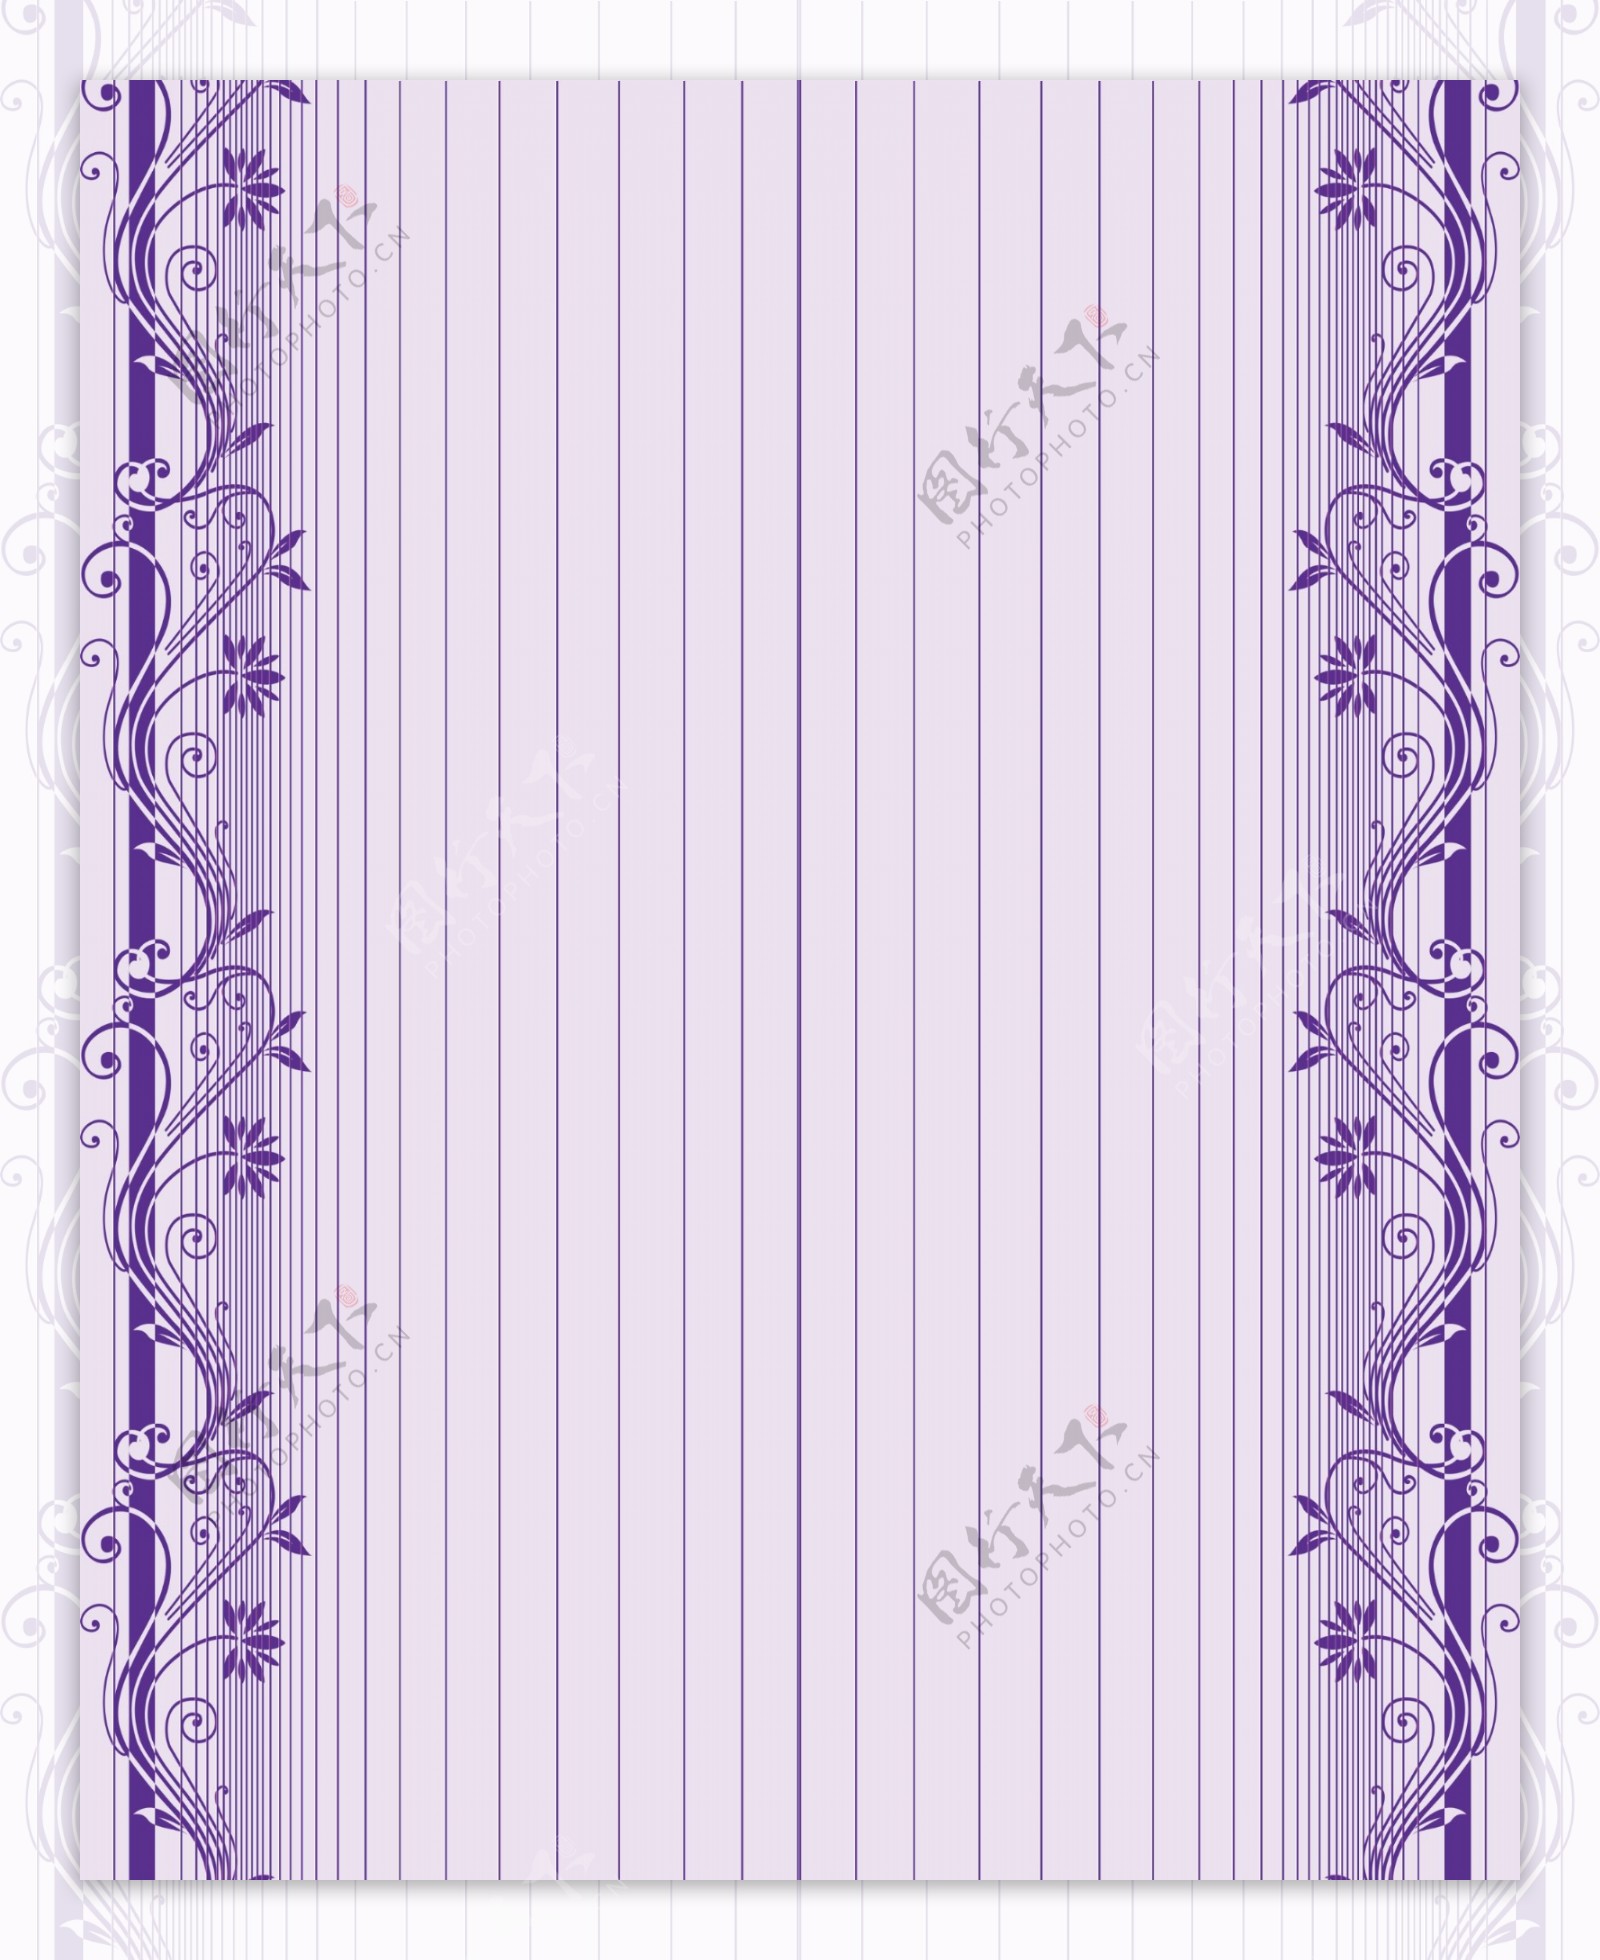 紫藤香图片